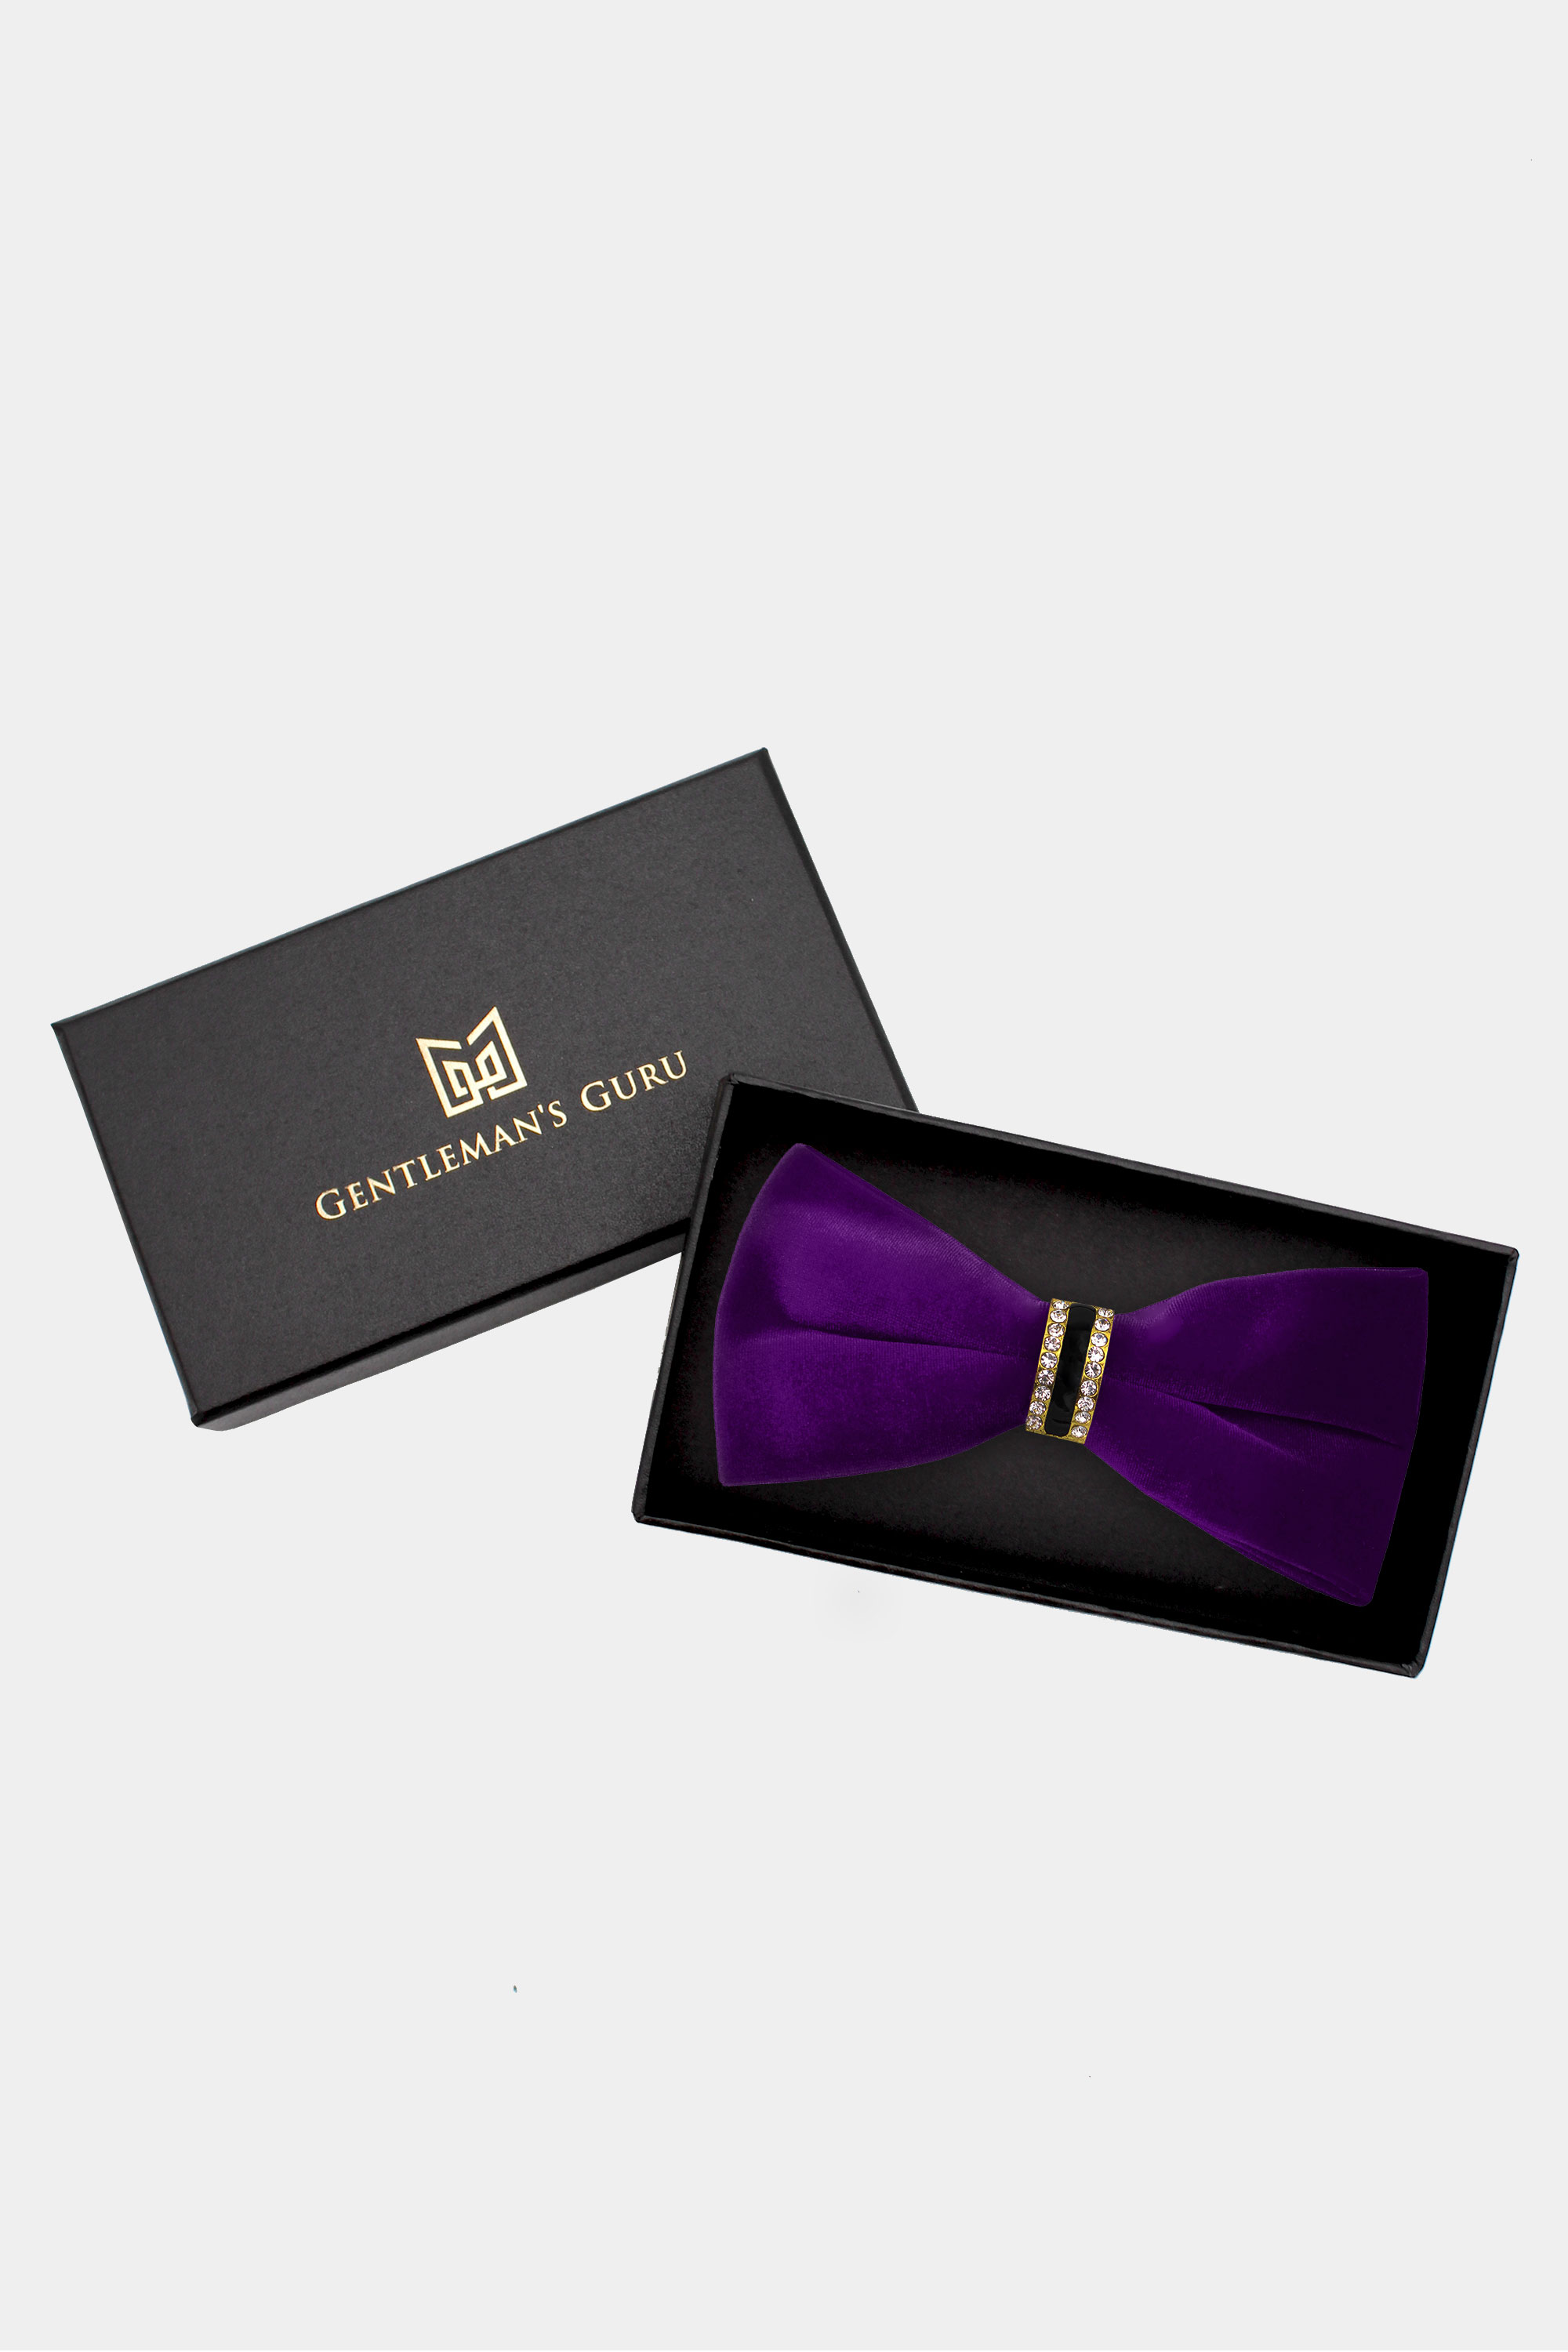 Luxury-Purple-Velvet-Bow-Tie-from-Gentlemansguru.com